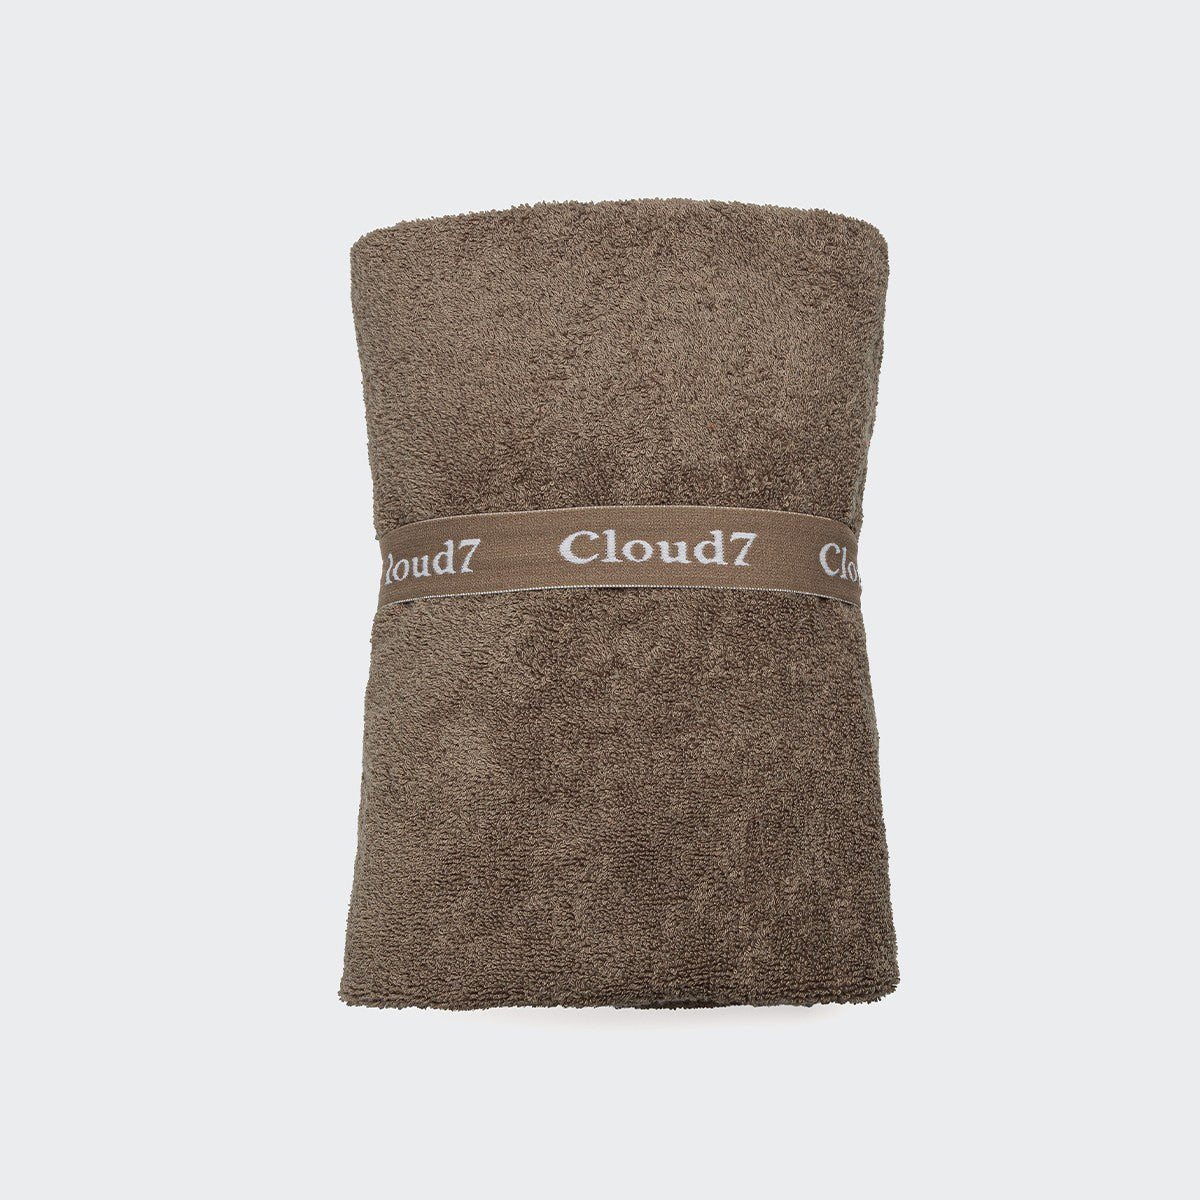 Cloud7 Dog Bathrobe - Föhr Stone